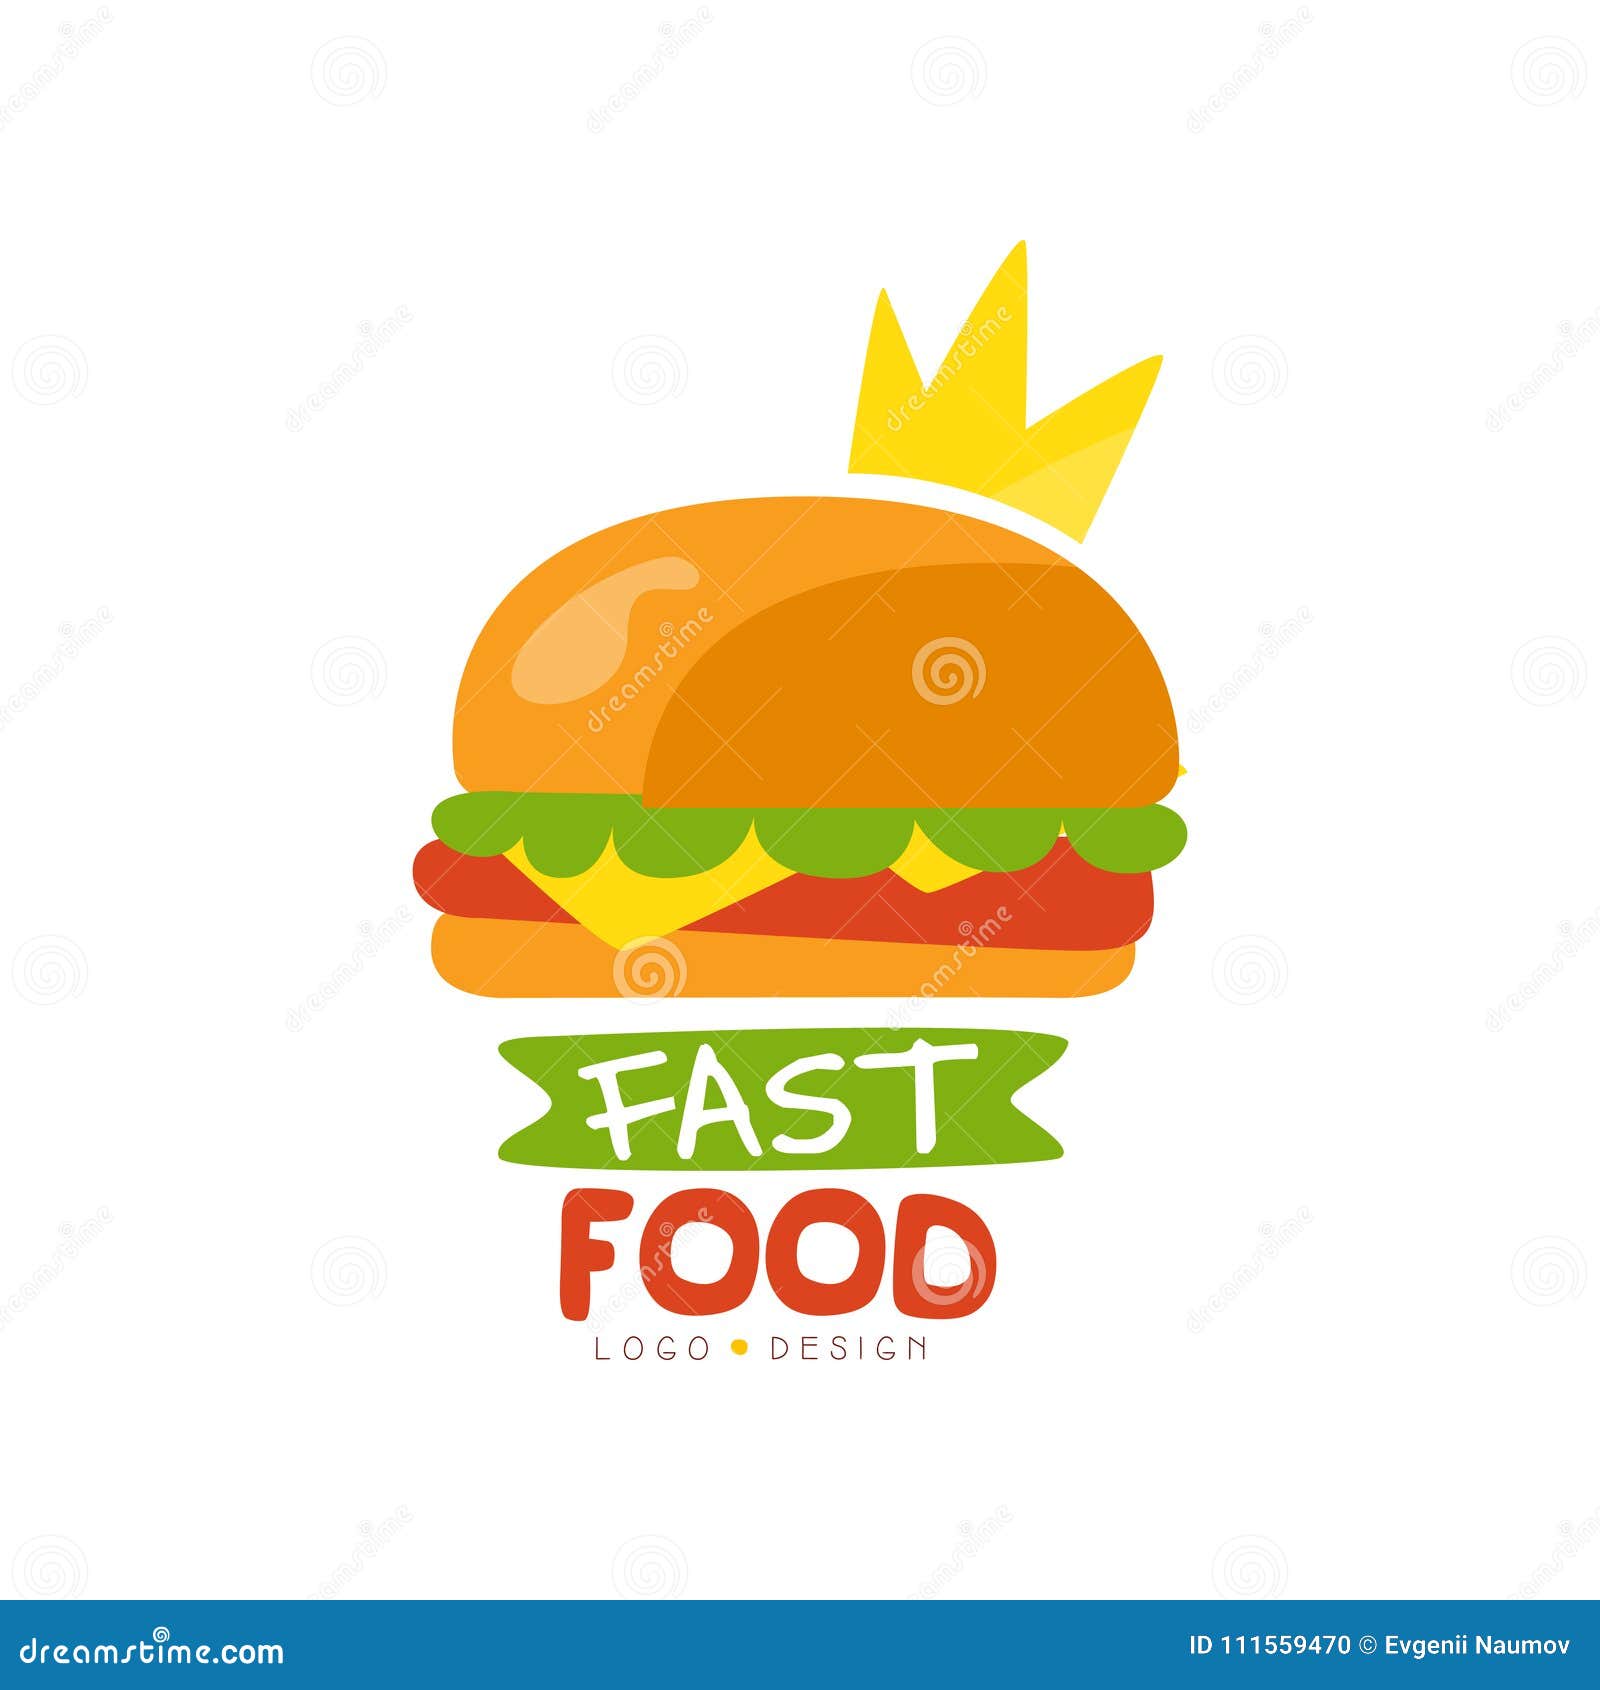 Слово фаст фуд. Fast food логотип. Лого для фаст фуда. Логотип кафе быстрого питания. Логотип для сети фаст фуда.